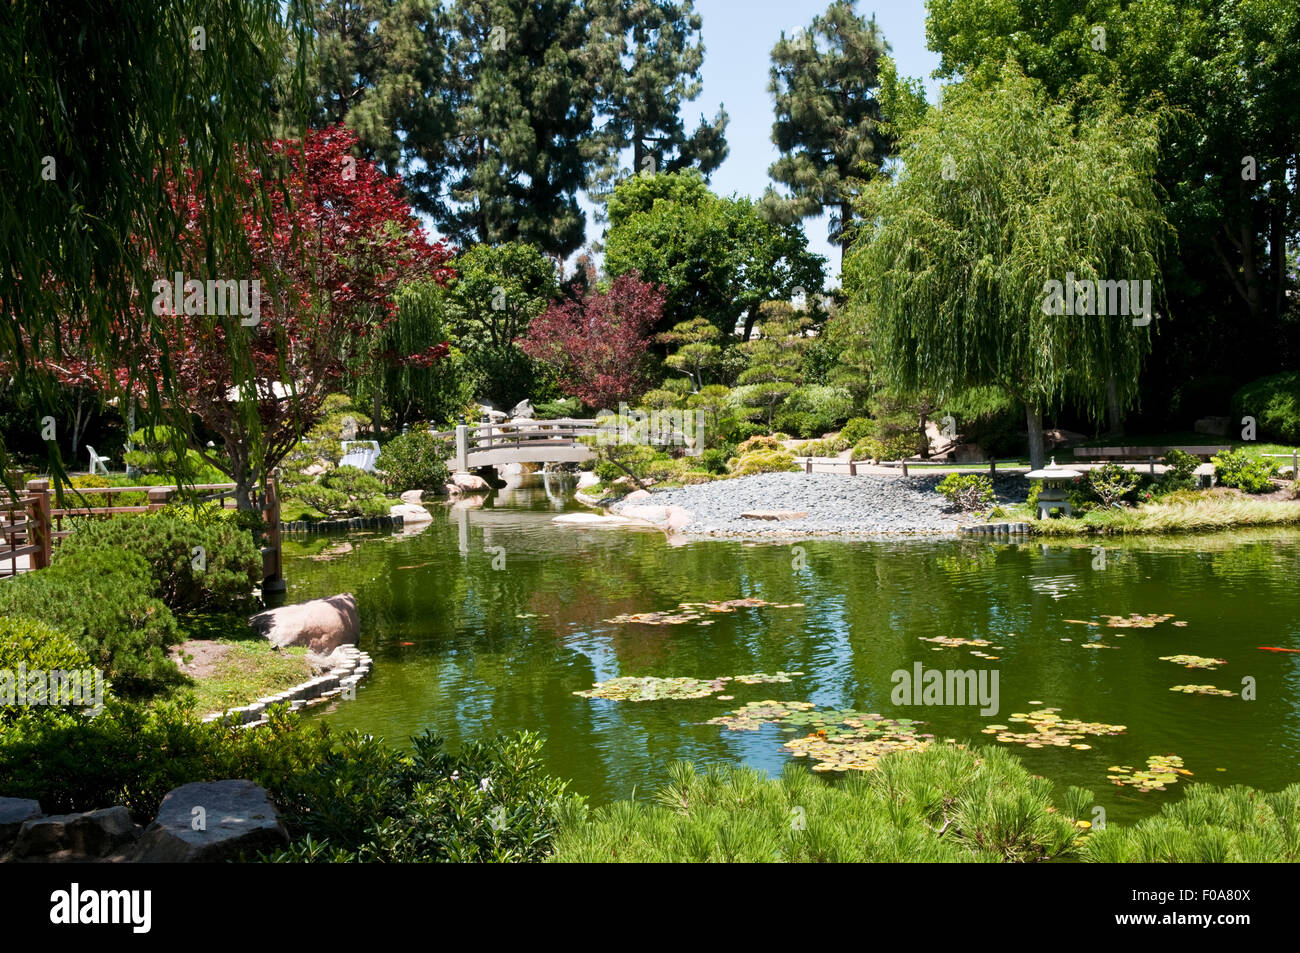 Der Earl Burns Miller japanische Garten auf dem Campus der California State University, Long Beach, Kalifornien, USA Stockfoto